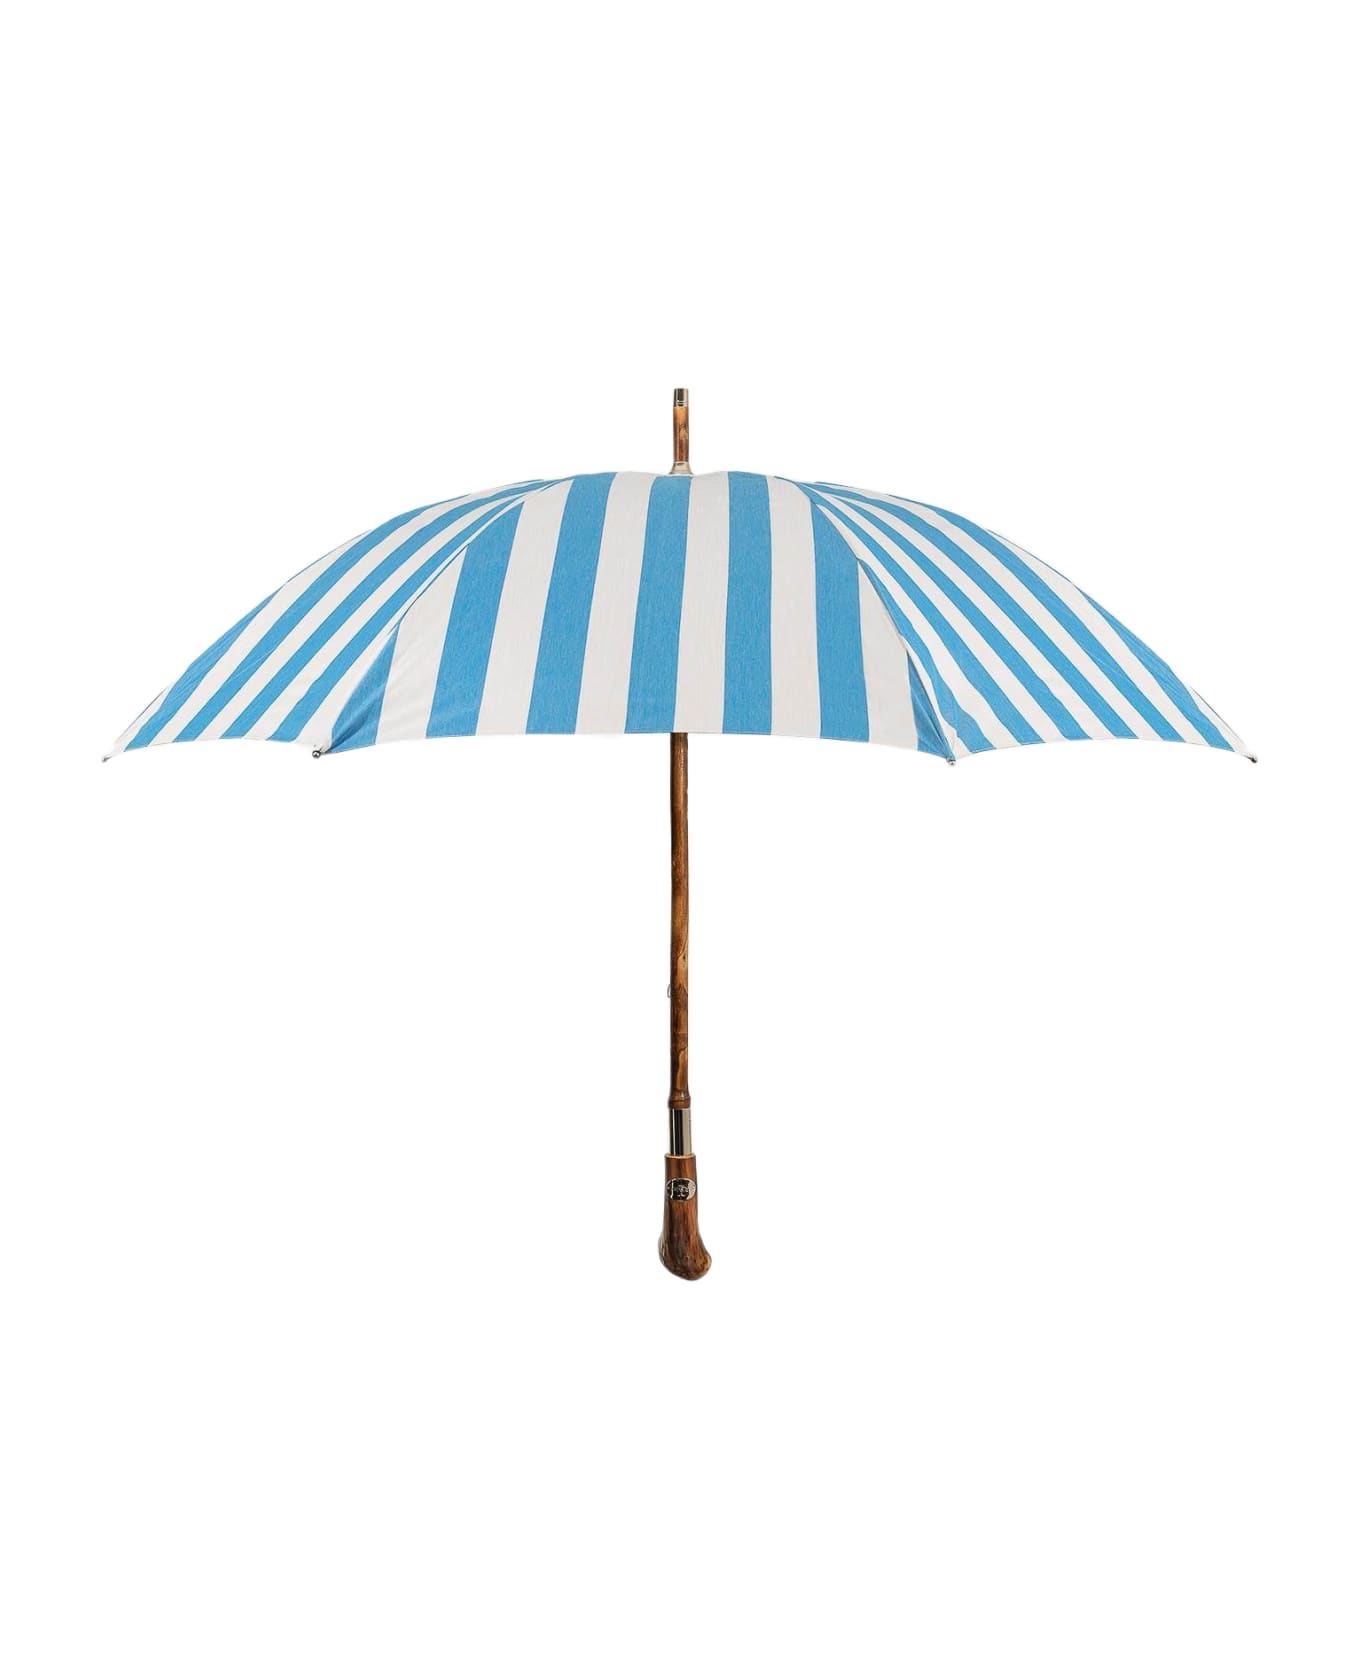 Larusmiani Umbrella 'pic Nic' Umbrella - LightBlue 傘